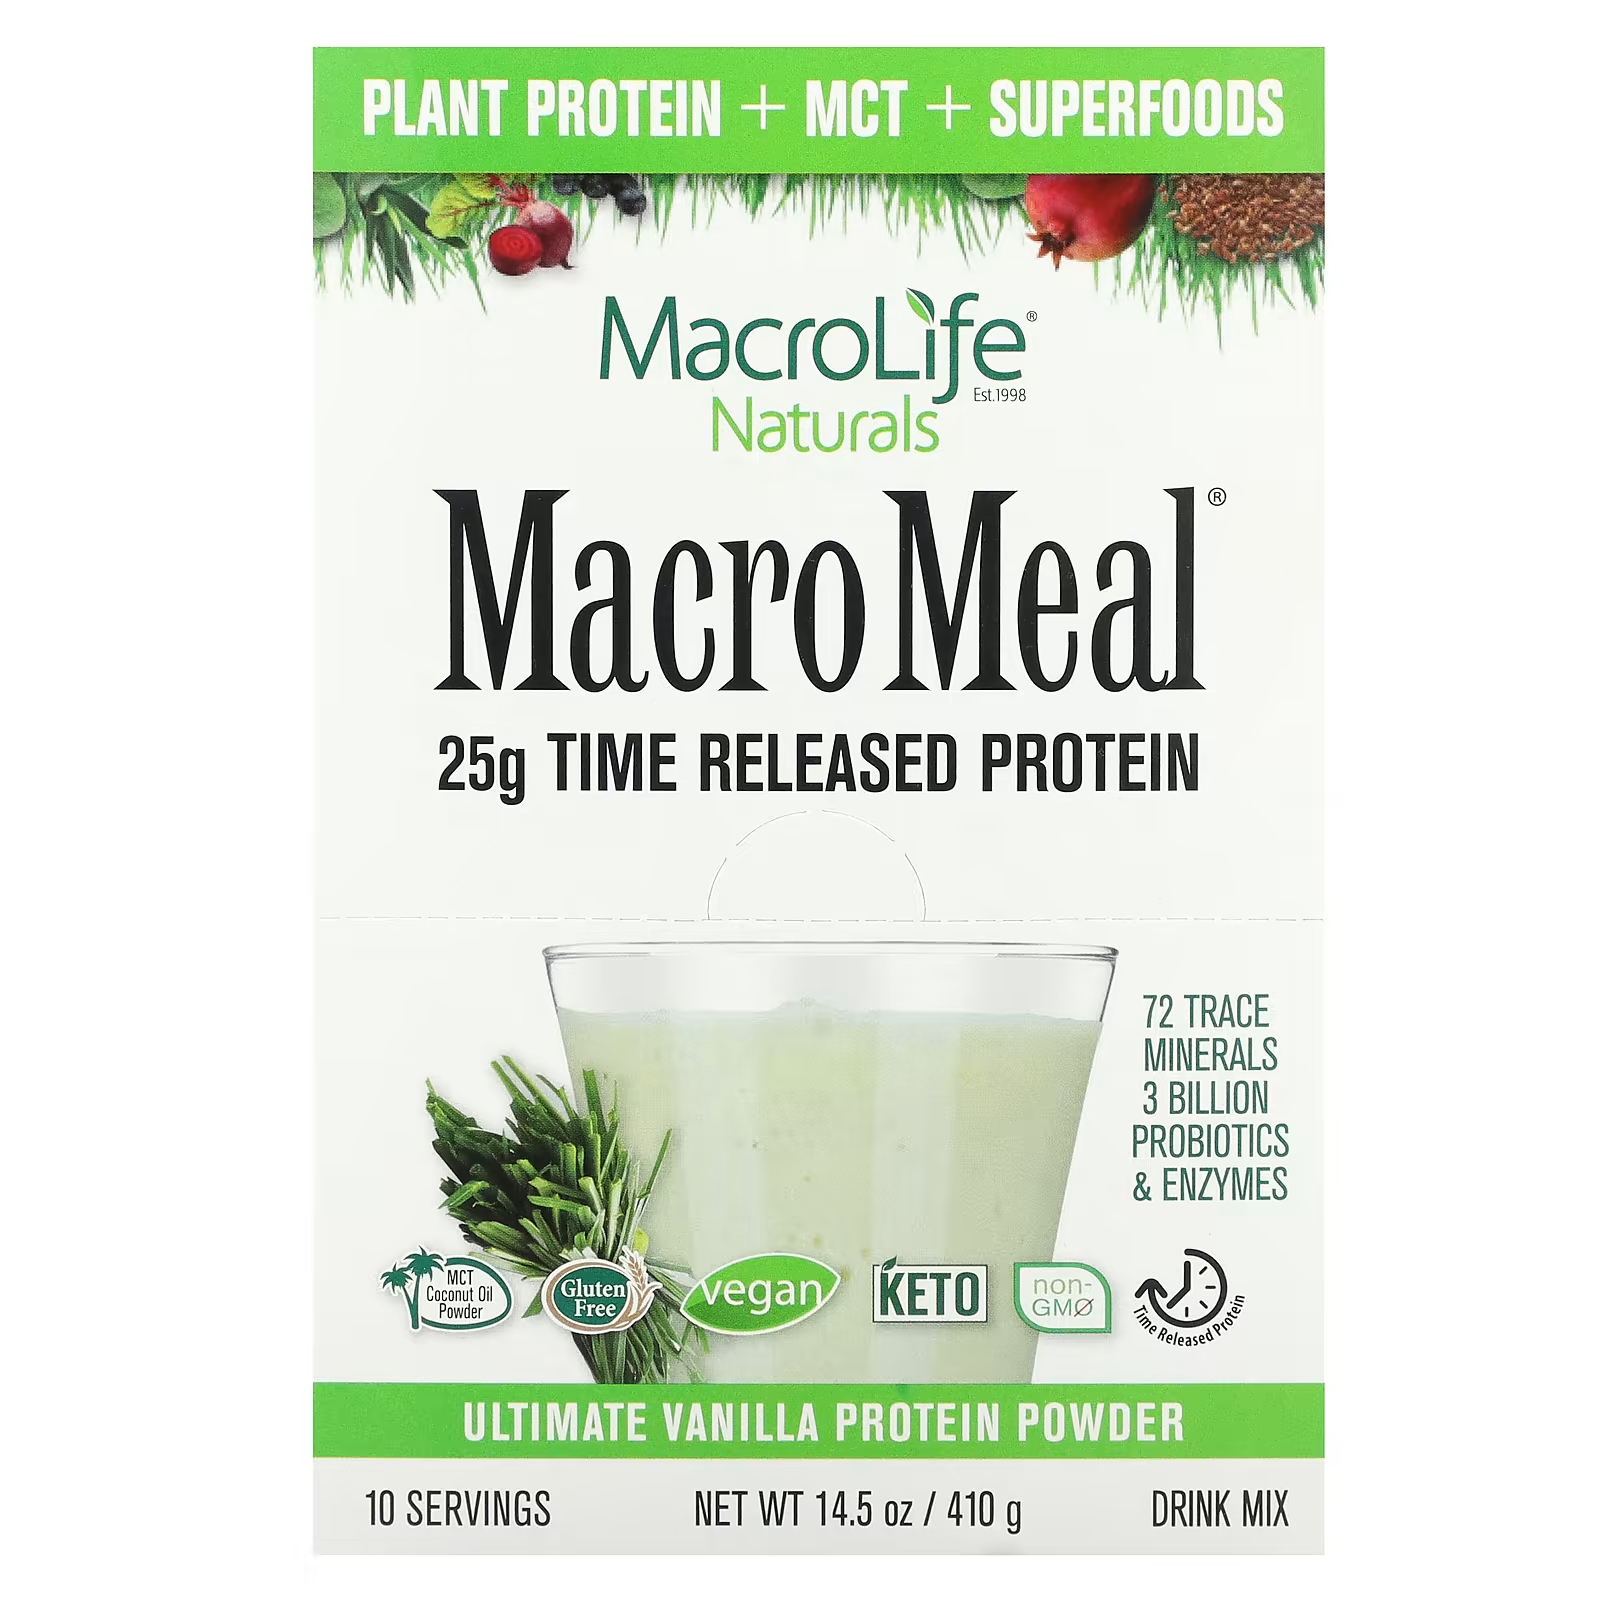 Macrolife Naturals MacroMeal Ultimate Протеиновый порошок с ванилью, 10 пакетов по 41 г